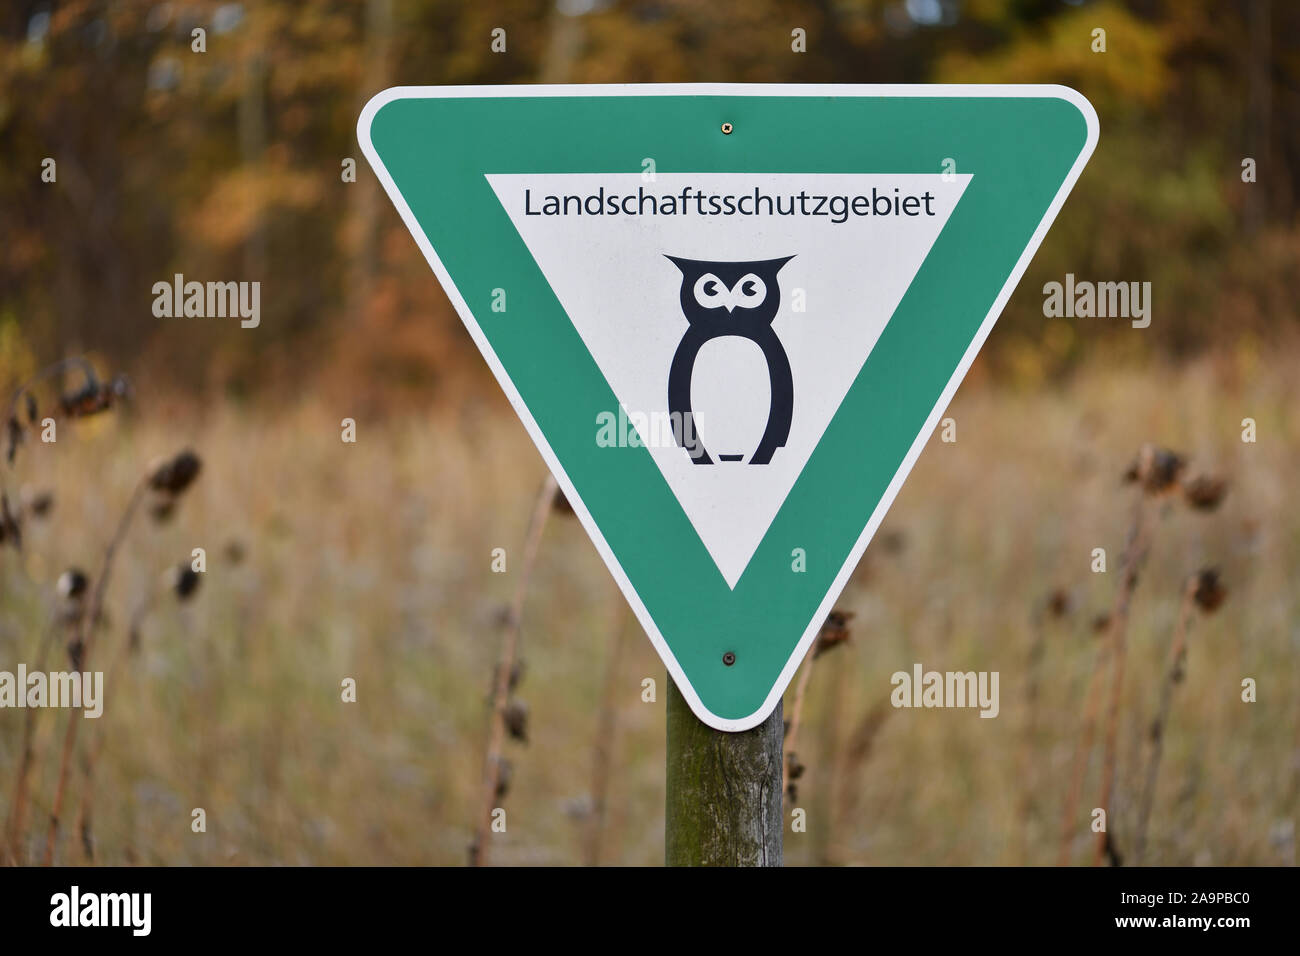 Naturschutzgebiet in Niedersachsen, Deutschland. Grünes Schild mit schwarzem Eule zeigt eine Landschaft finden. Symbol für deutsche Landschaftsschutzgebiet. Stockfoto